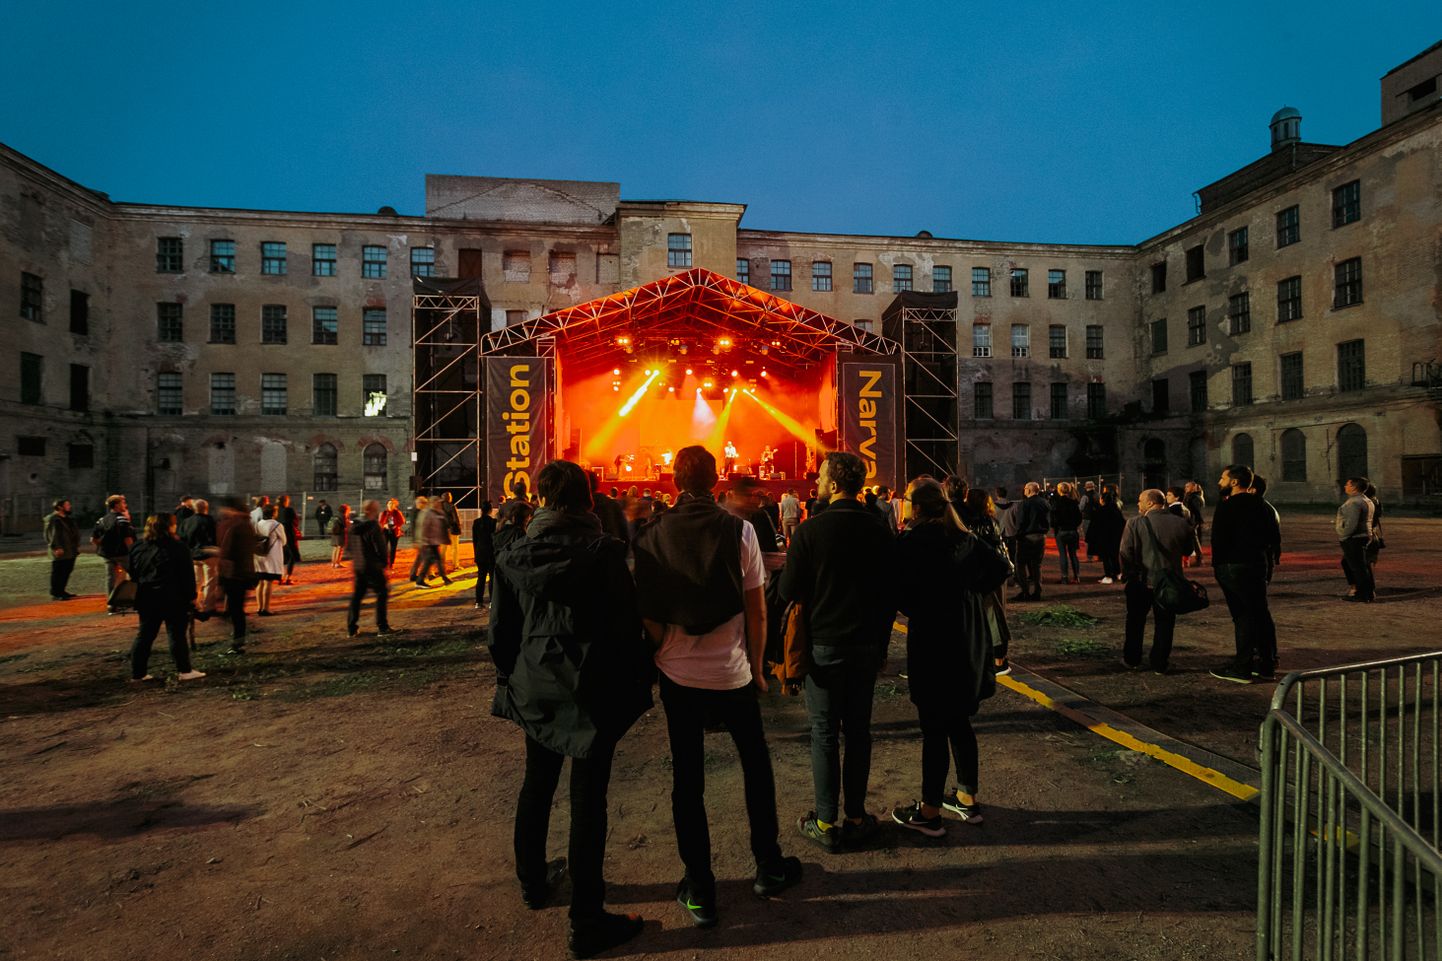 2018. aastal alguse saanud festivali kese on asunud igal aastal Narva eri paikades: Kreenholmi kvartalis, Vaba Lava teatrikeskuses ja jõepromenaadil. Sel aastal esineb enamik artiste Narva linnuses.